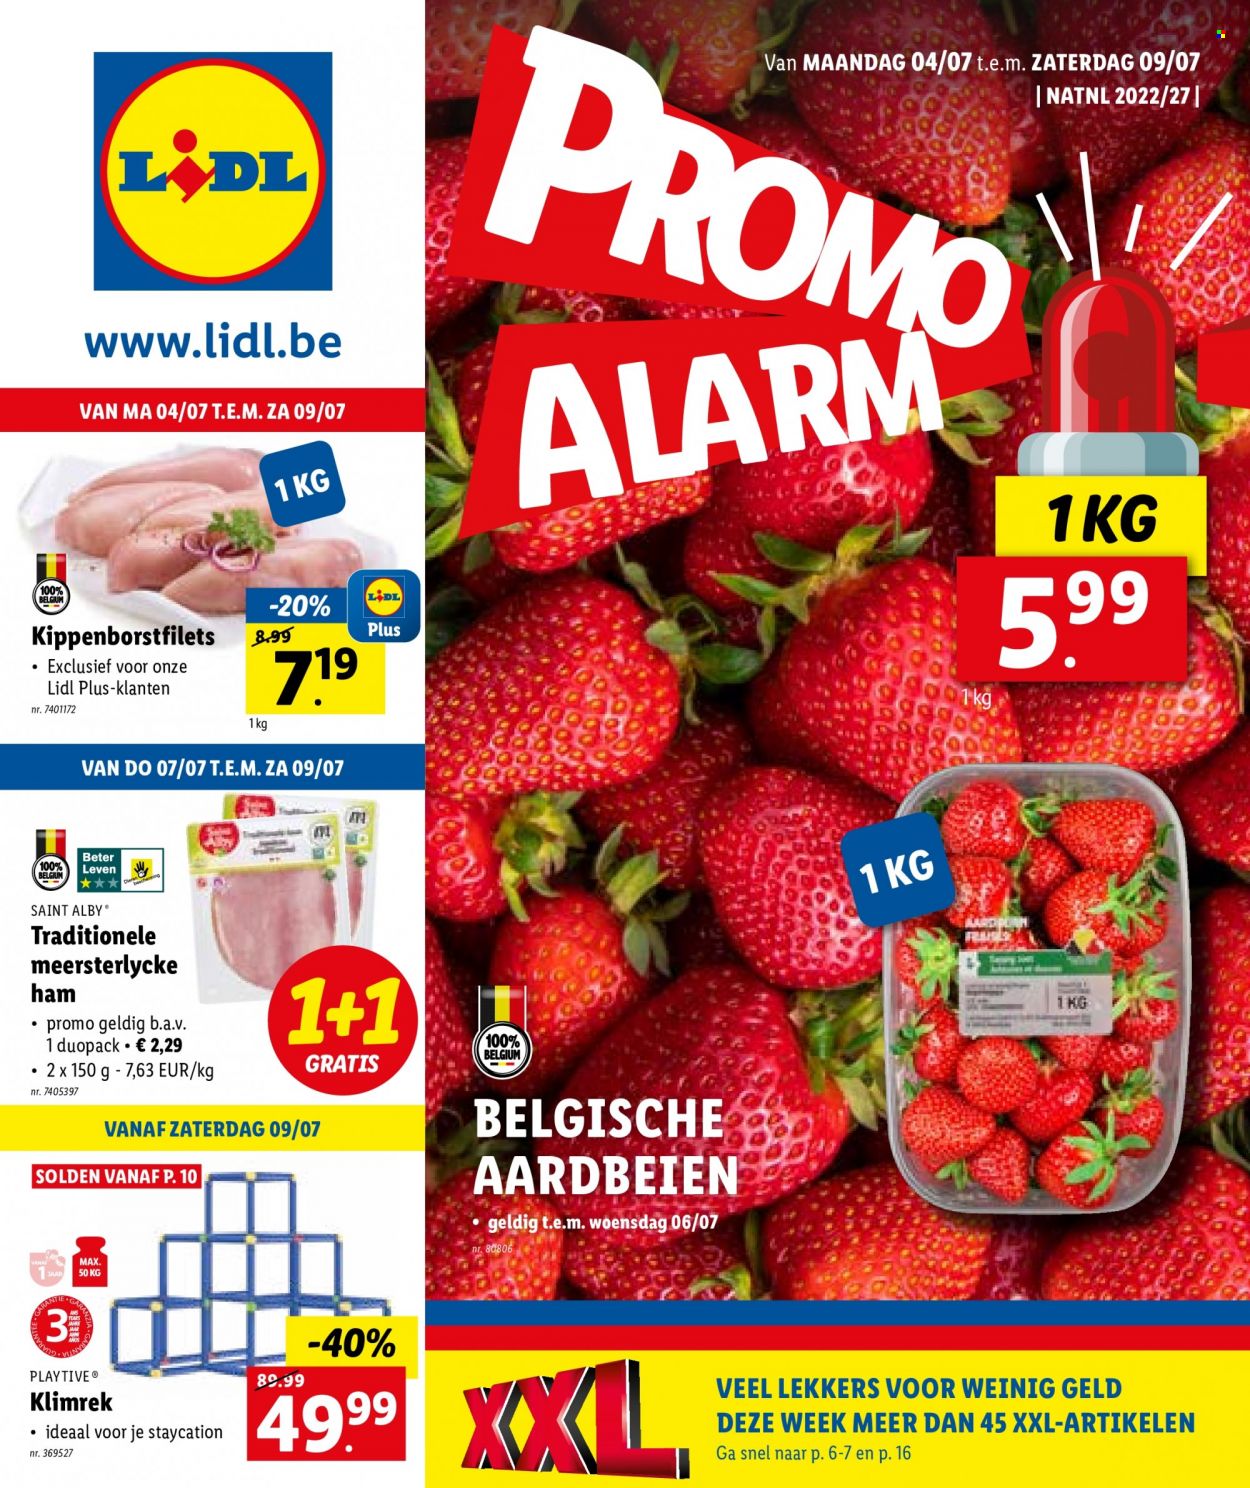 thumbnail - Lidl-aanbieding - 04/07/2022 - 09/07/2022 -  producten in de aanbieding - aardbeien, ham, alarm. Pagina 1.